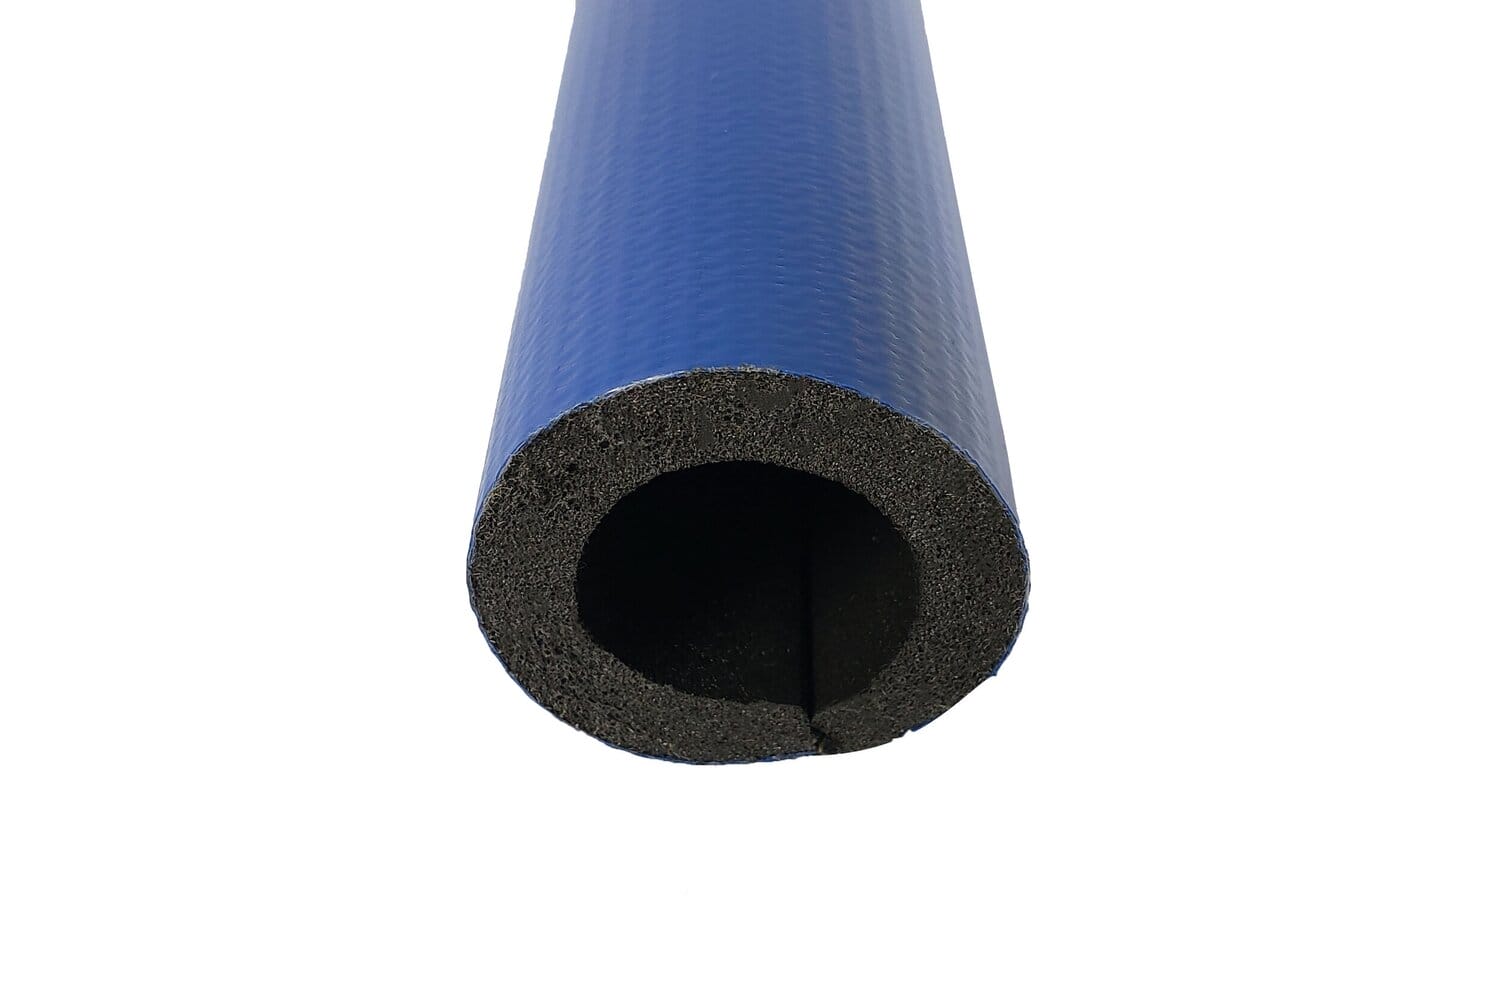 Foam pipe cover - PI-60-BL